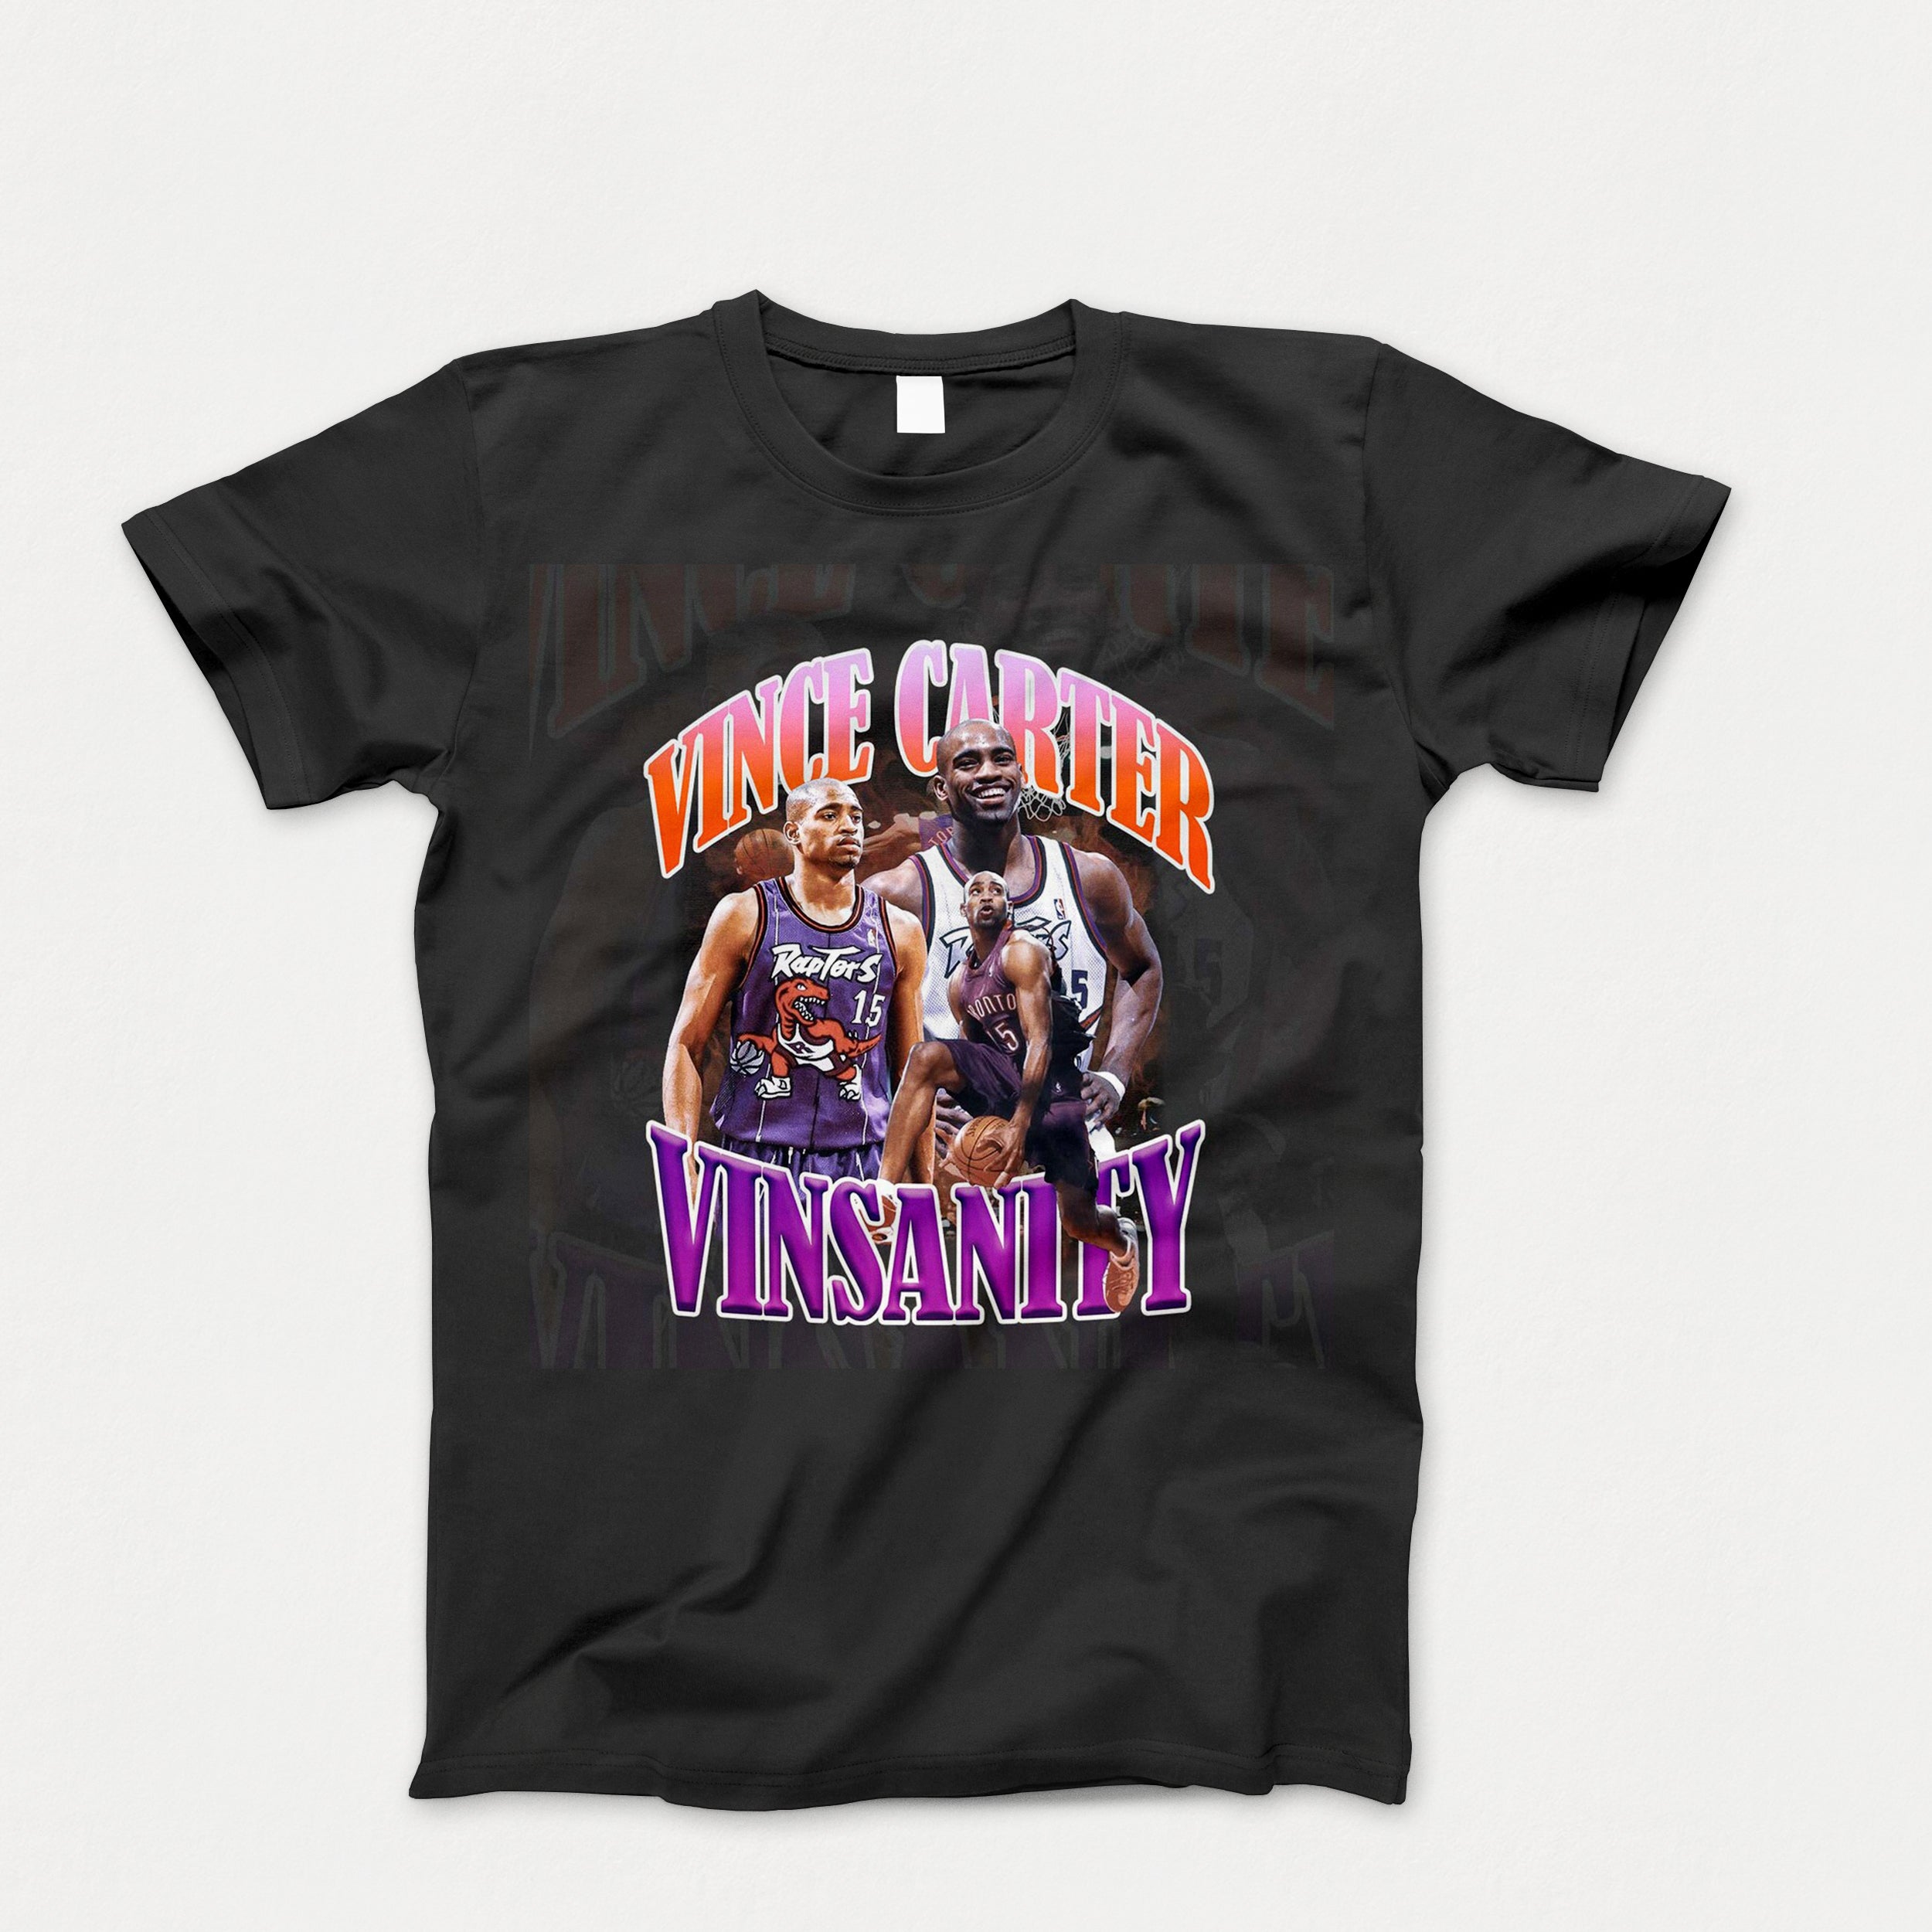 Kids Vince Carter Shirt